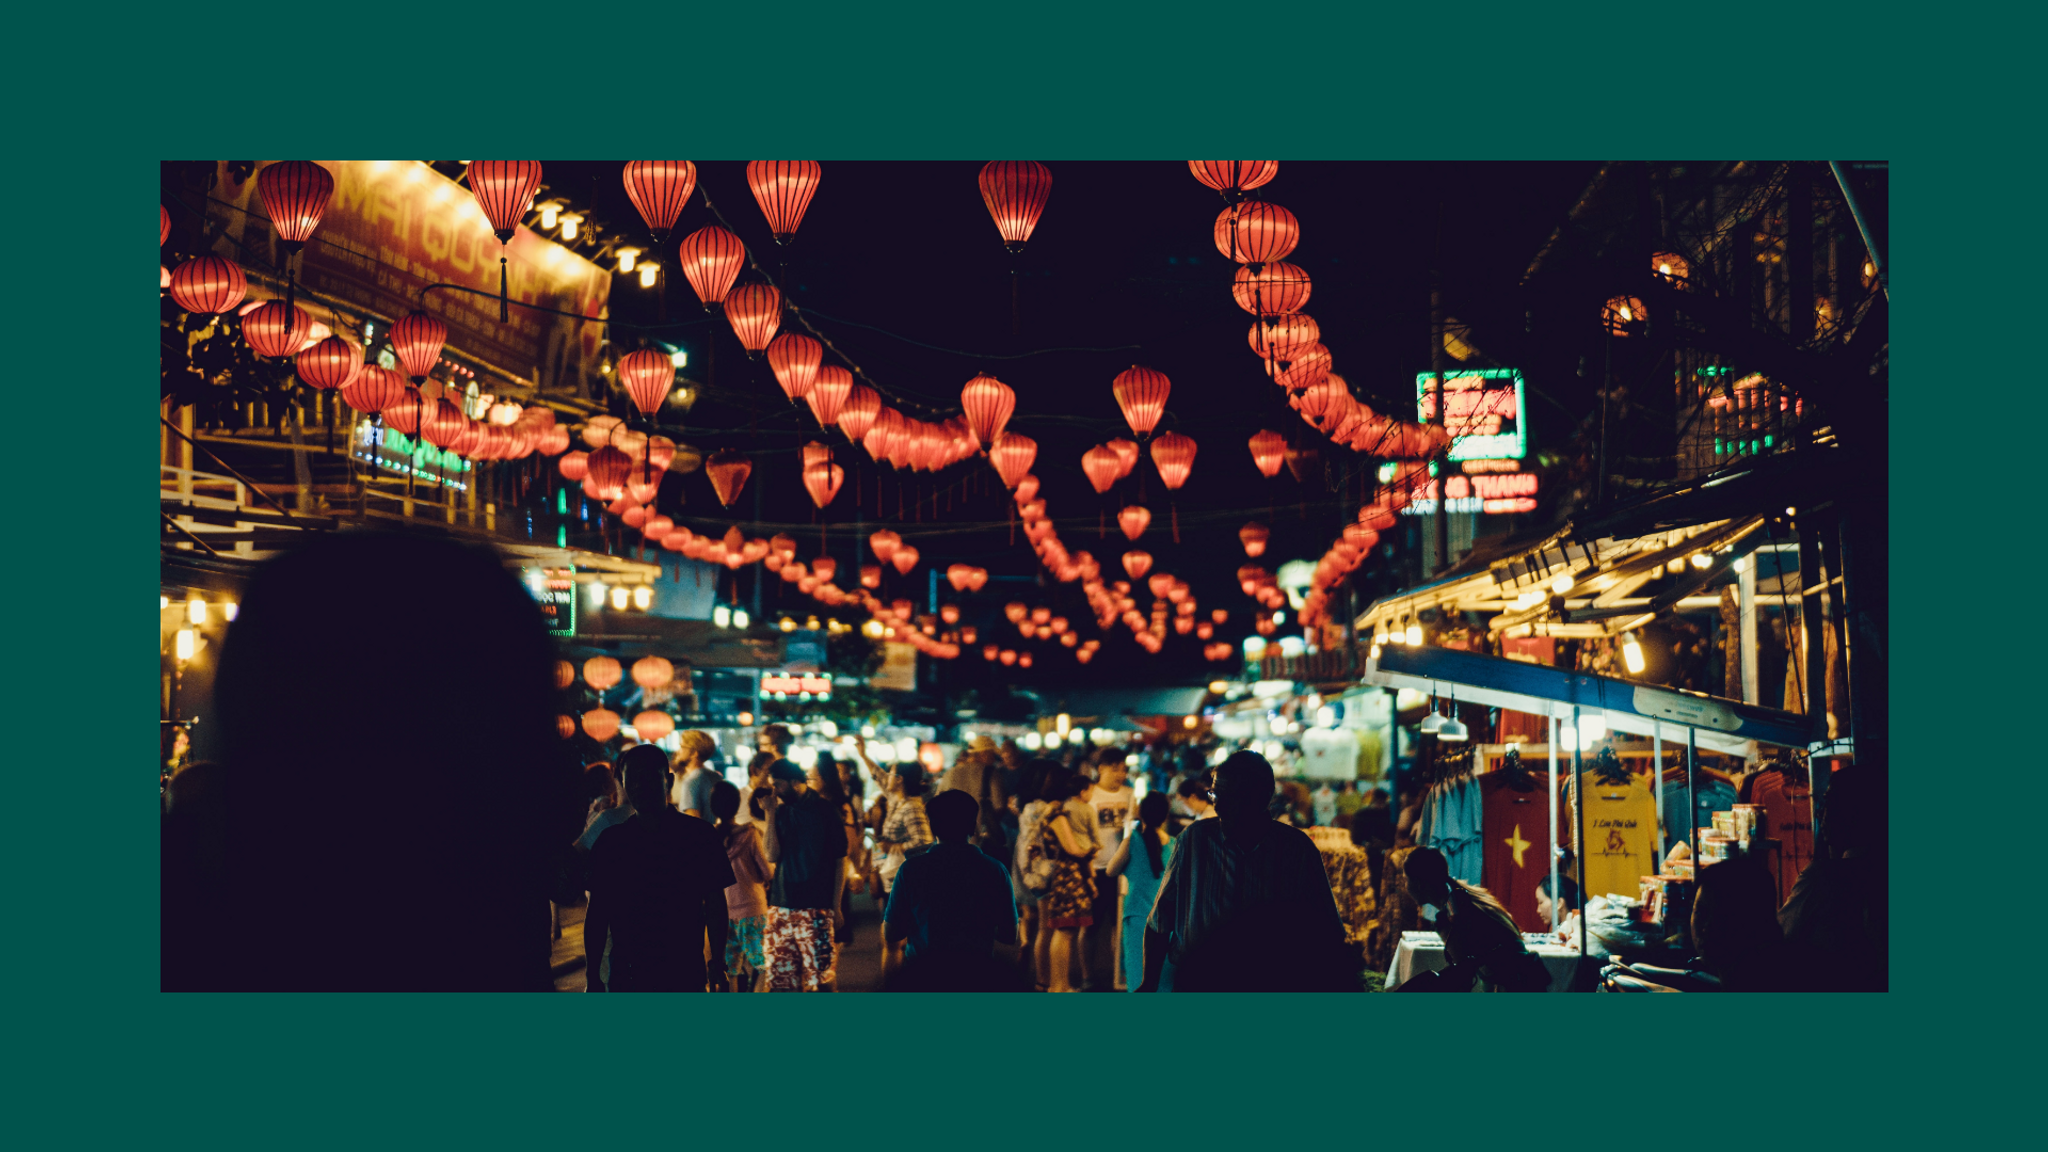 Vietnamese street market with paper lanterns